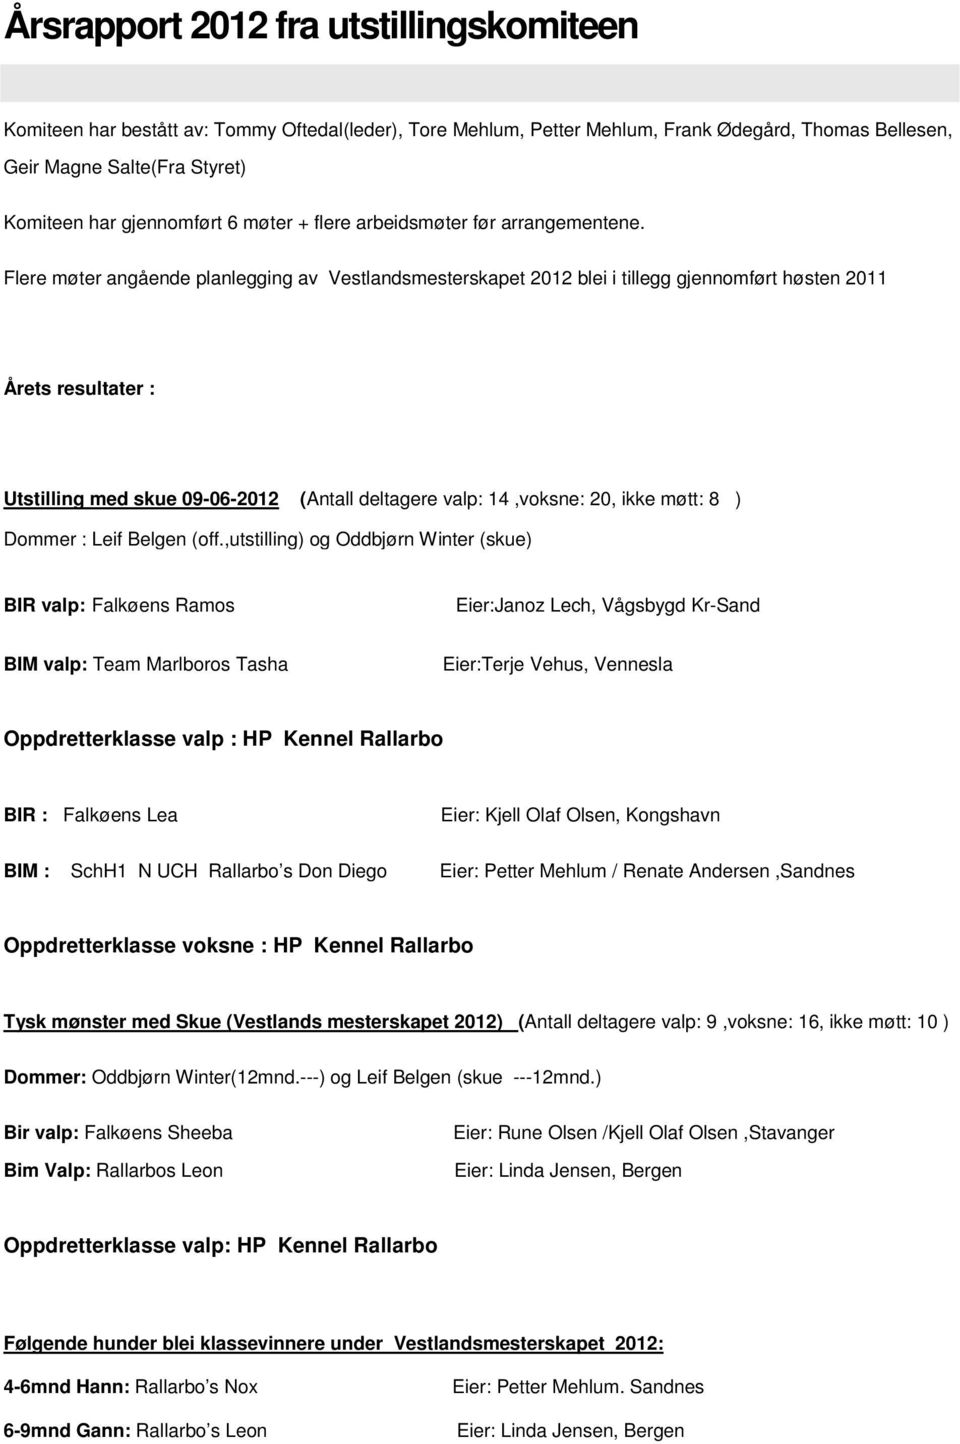 Flere møter angående planlegging av Vestlandsmesterskapet 2012 blei i tillegg gjennomført høsten 2011 Årets resultater : Utstilling med skue 09-06-2012 (Antall deltagere valp: 14,voksne: 20, ikke